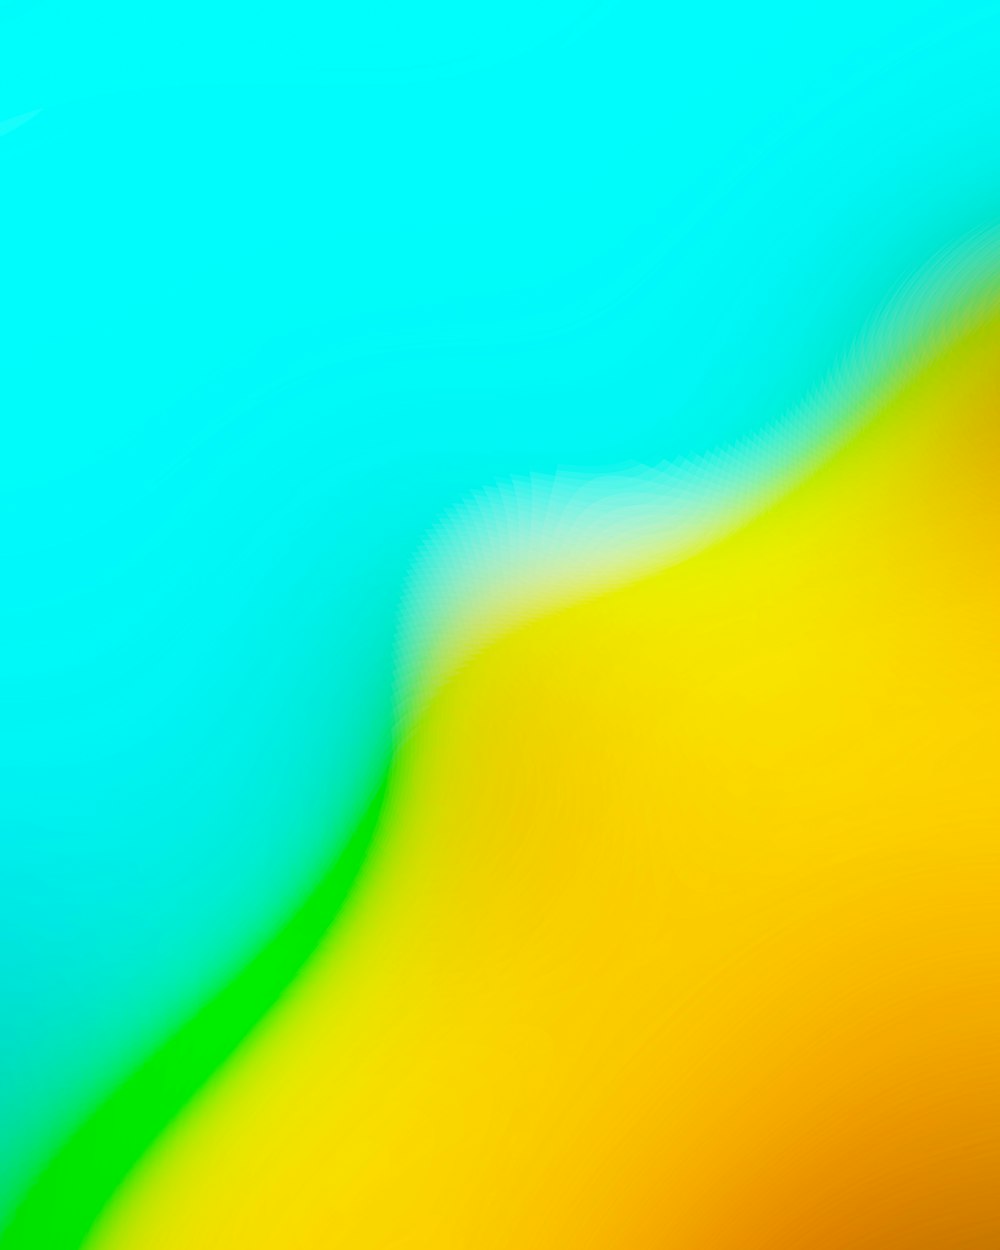 uma imagem desfocada de um fundo amarelo e verde